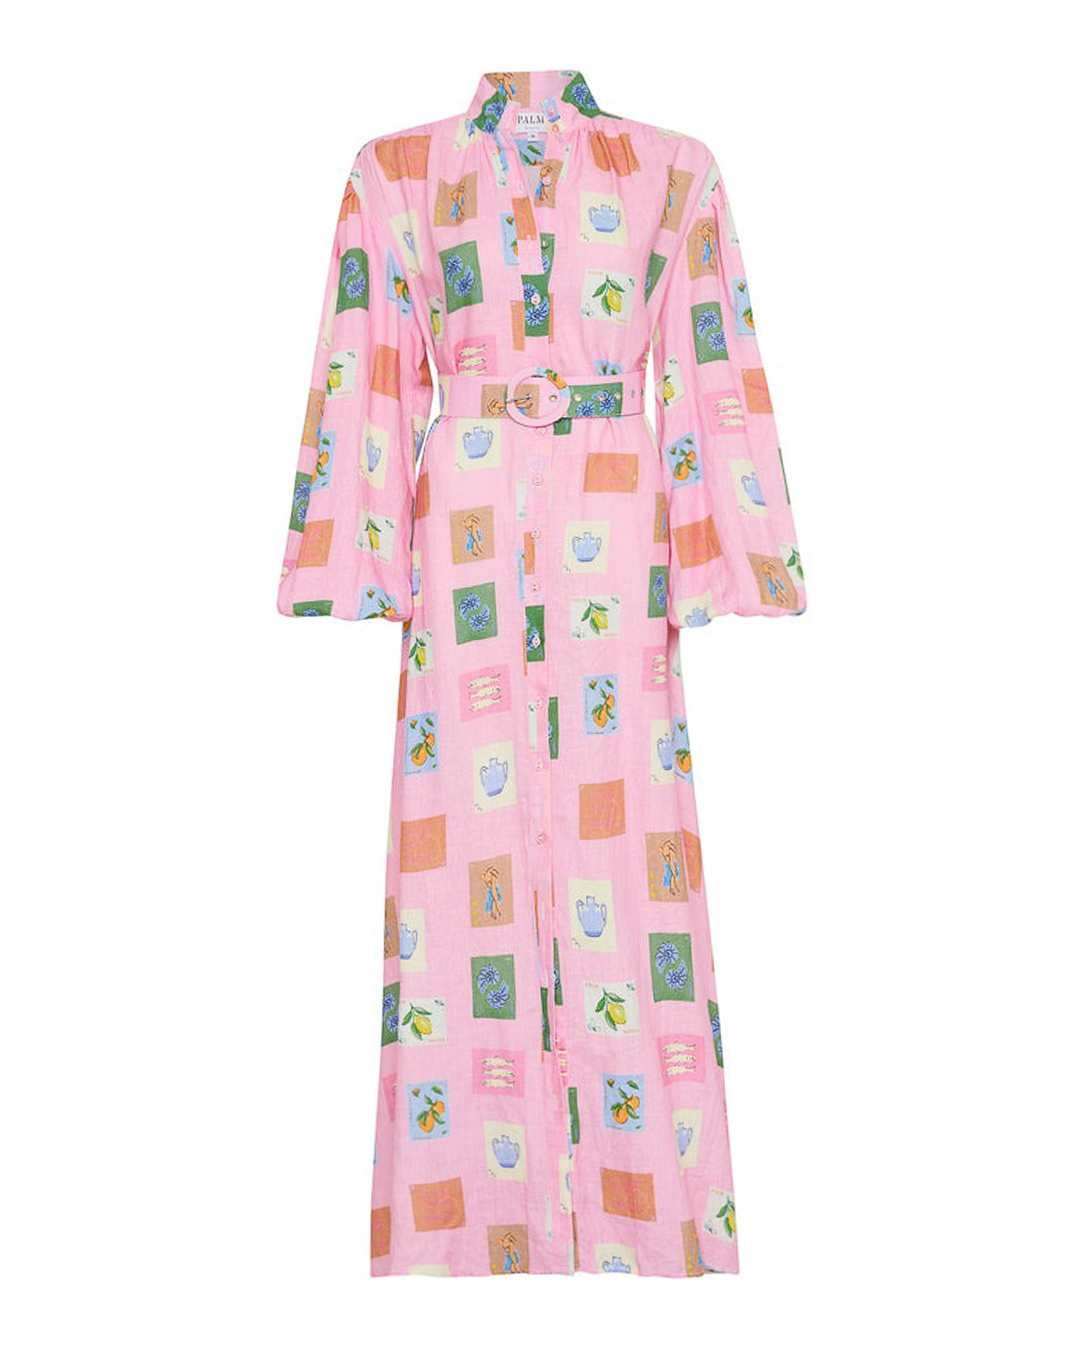 платье+ремень Palm Noosa NODDY DRESS розовый+принт 8, размер 8, цвет розовый+принт